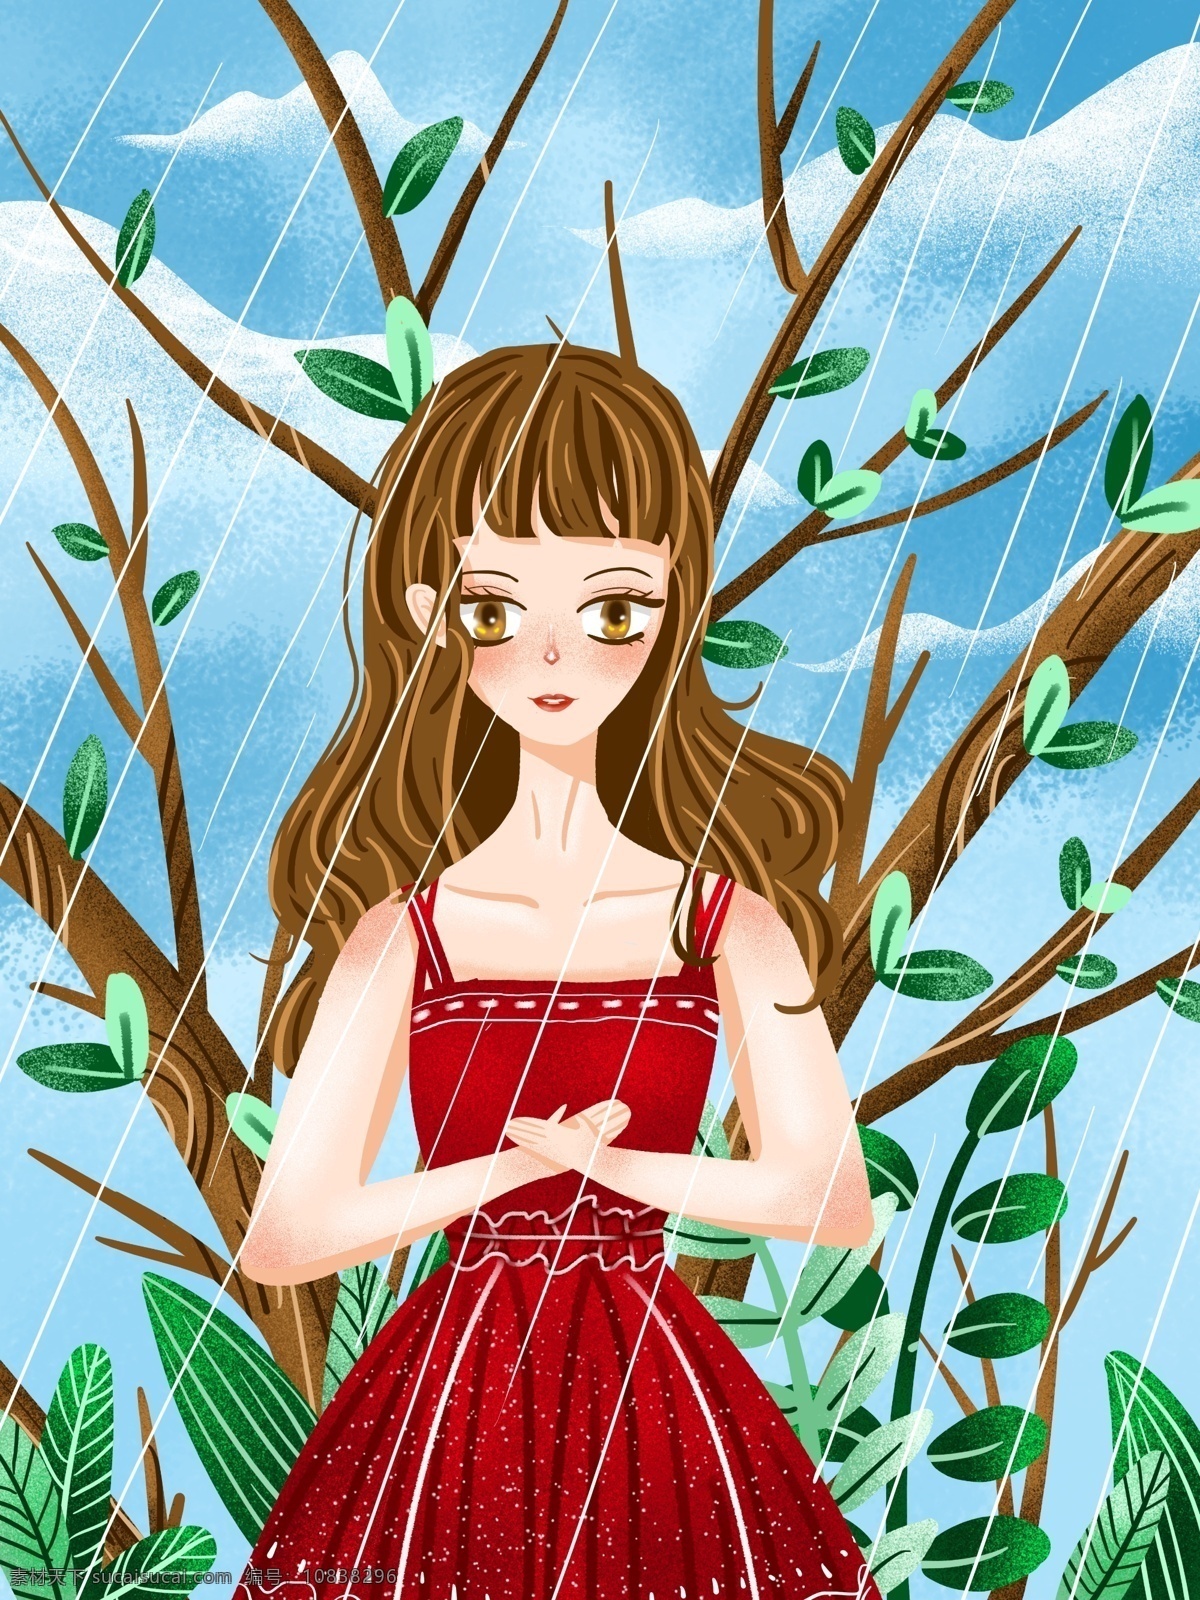 原创 谷雨 雨 中 红 裙子 女孩 雨中 谢雨 树枝 植物 红裙子 小清新